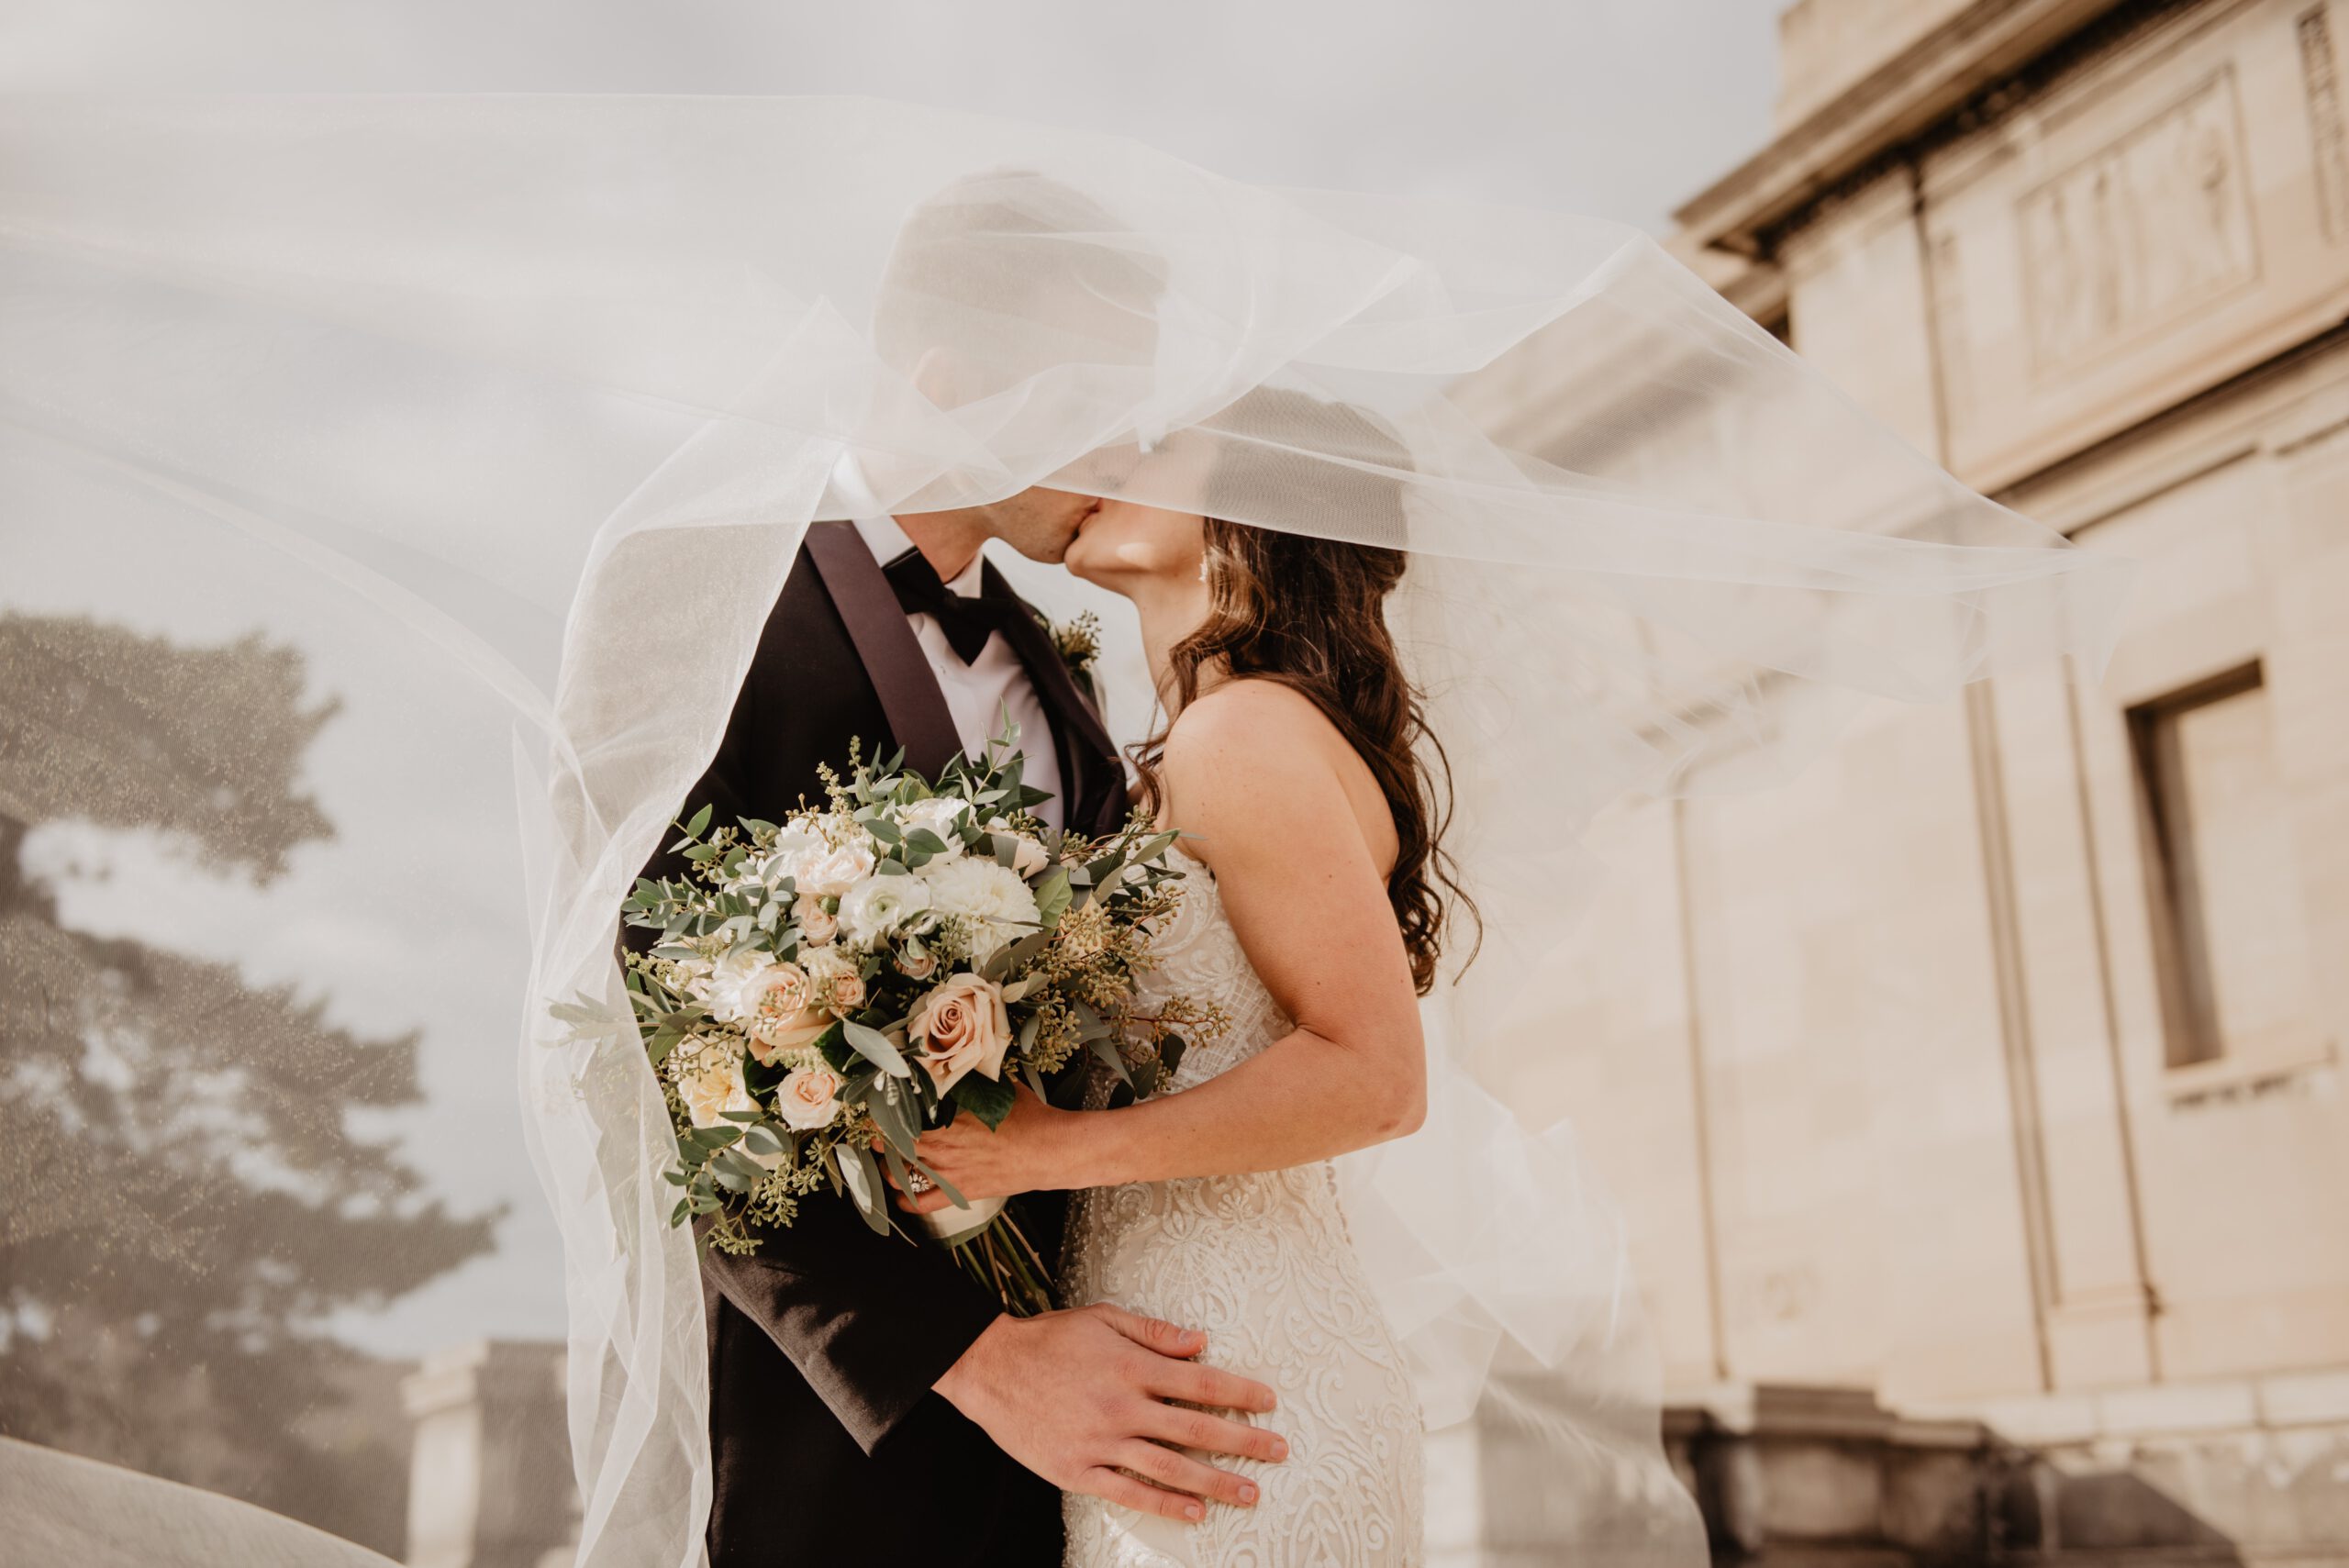 Małżeństwo całuje się i przytula.  Kobieta ma na sobie białą ślubną suknię i kwiaty w dłoniach. Mężczyzna ma garnitur. Ich twarze zakrywa rozwiany welon.